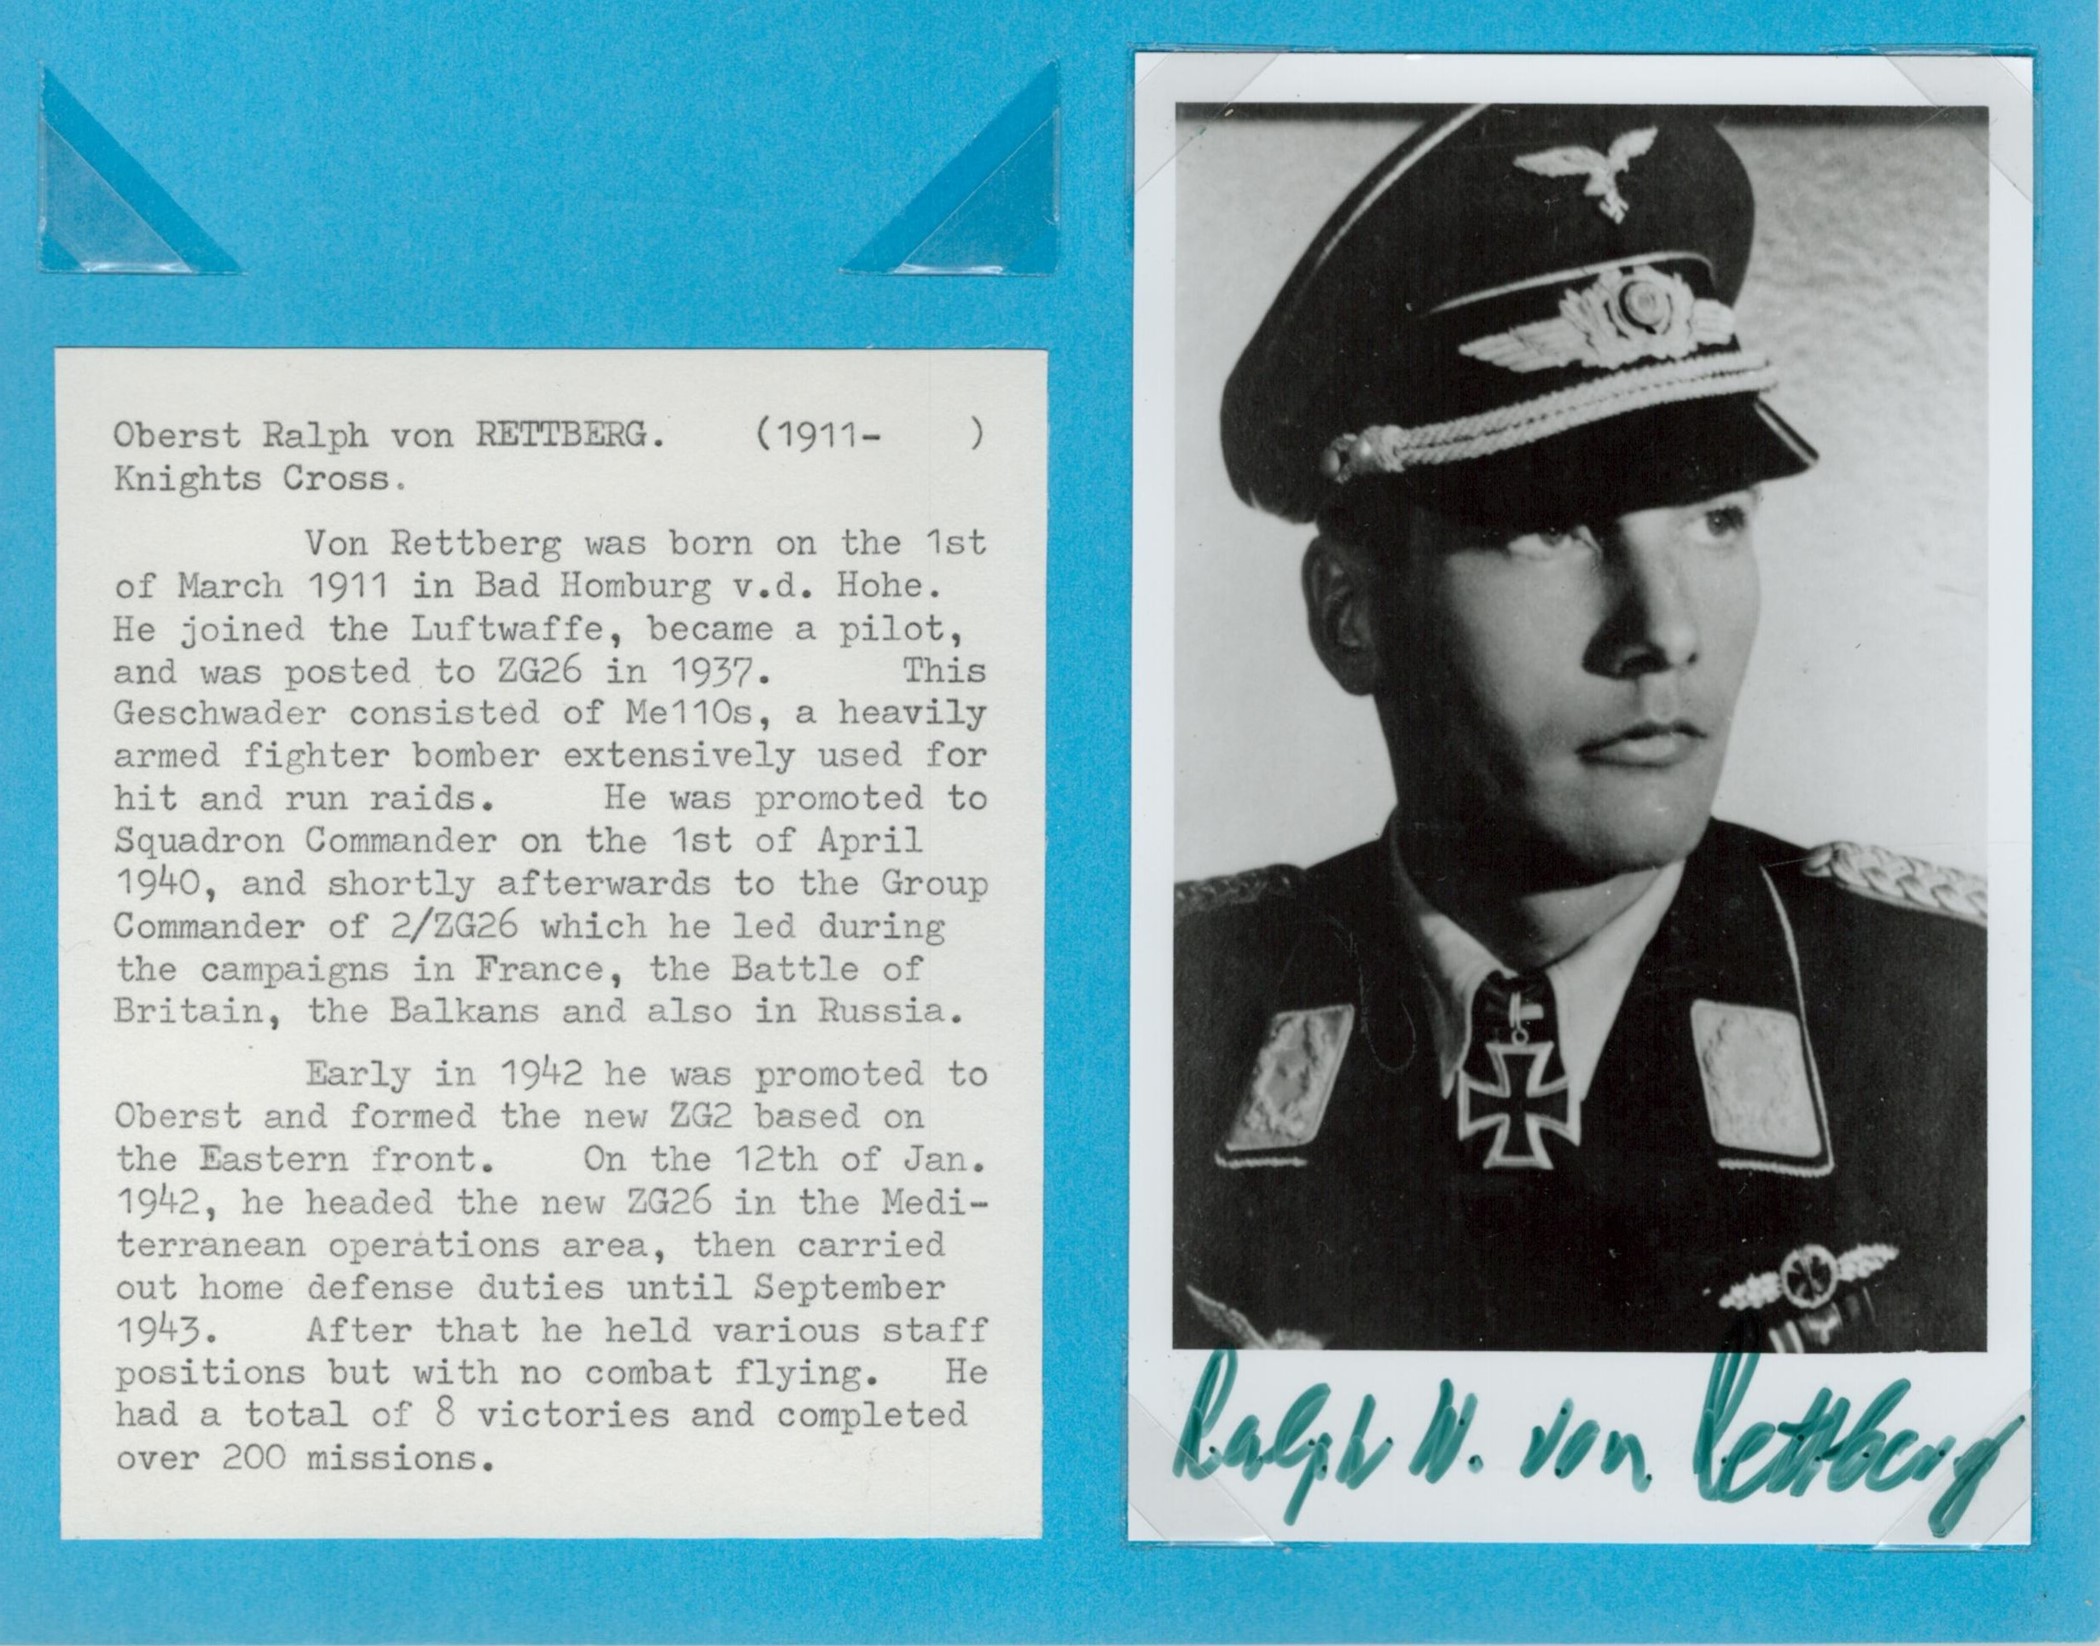 Oberst Ralph von Retteberg (1911 2004) signed 6x4 black and white photo. Ralph von Rettberg (1 March